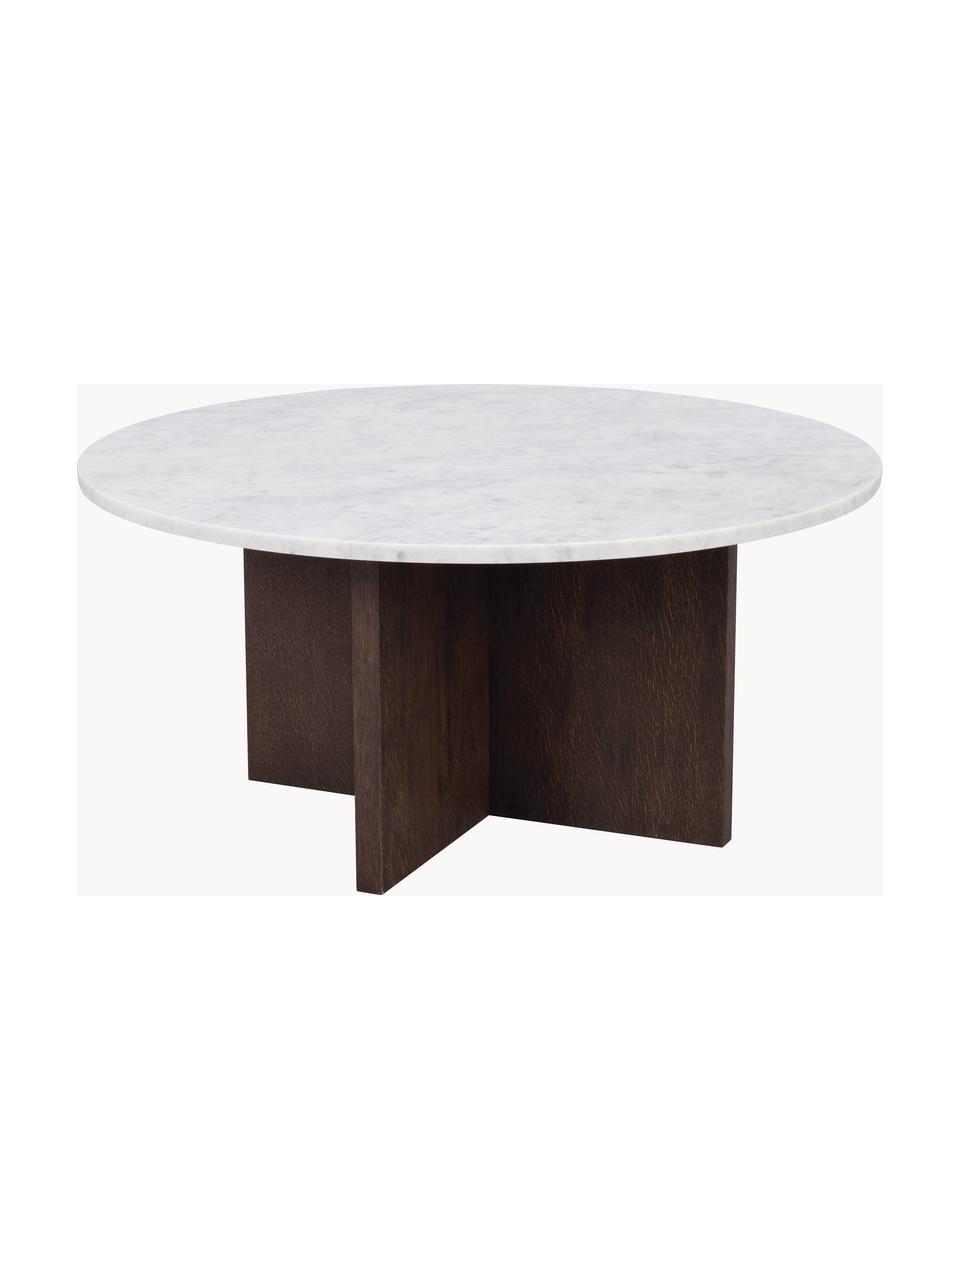 Okrągły stolik kawowy z marmuru Brooksville, Blat: marmur, Stelaż: płyta pilśniowa średniej , Biały, marmurowy, drewno naturalne, Ø 90 cm